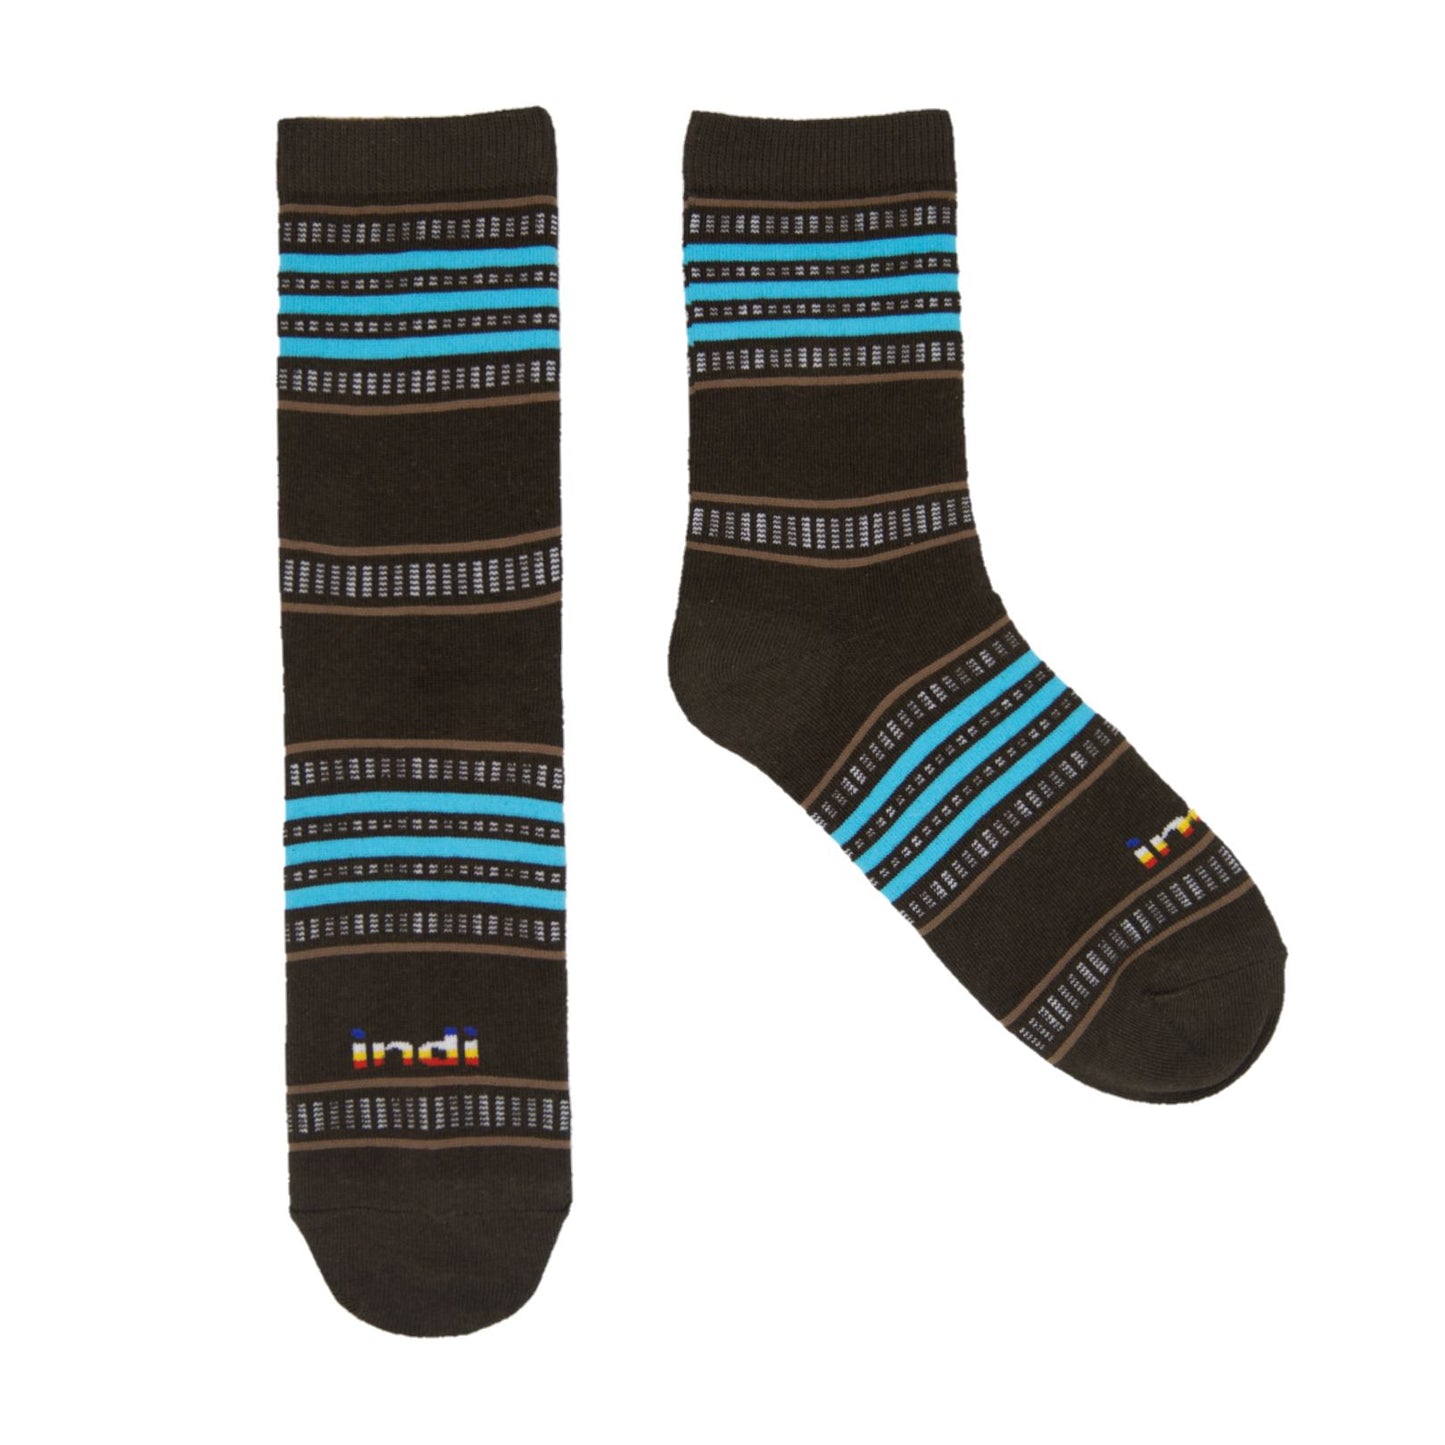 Kantarines (LBLB)- INDI Heritage Socks (Adult)